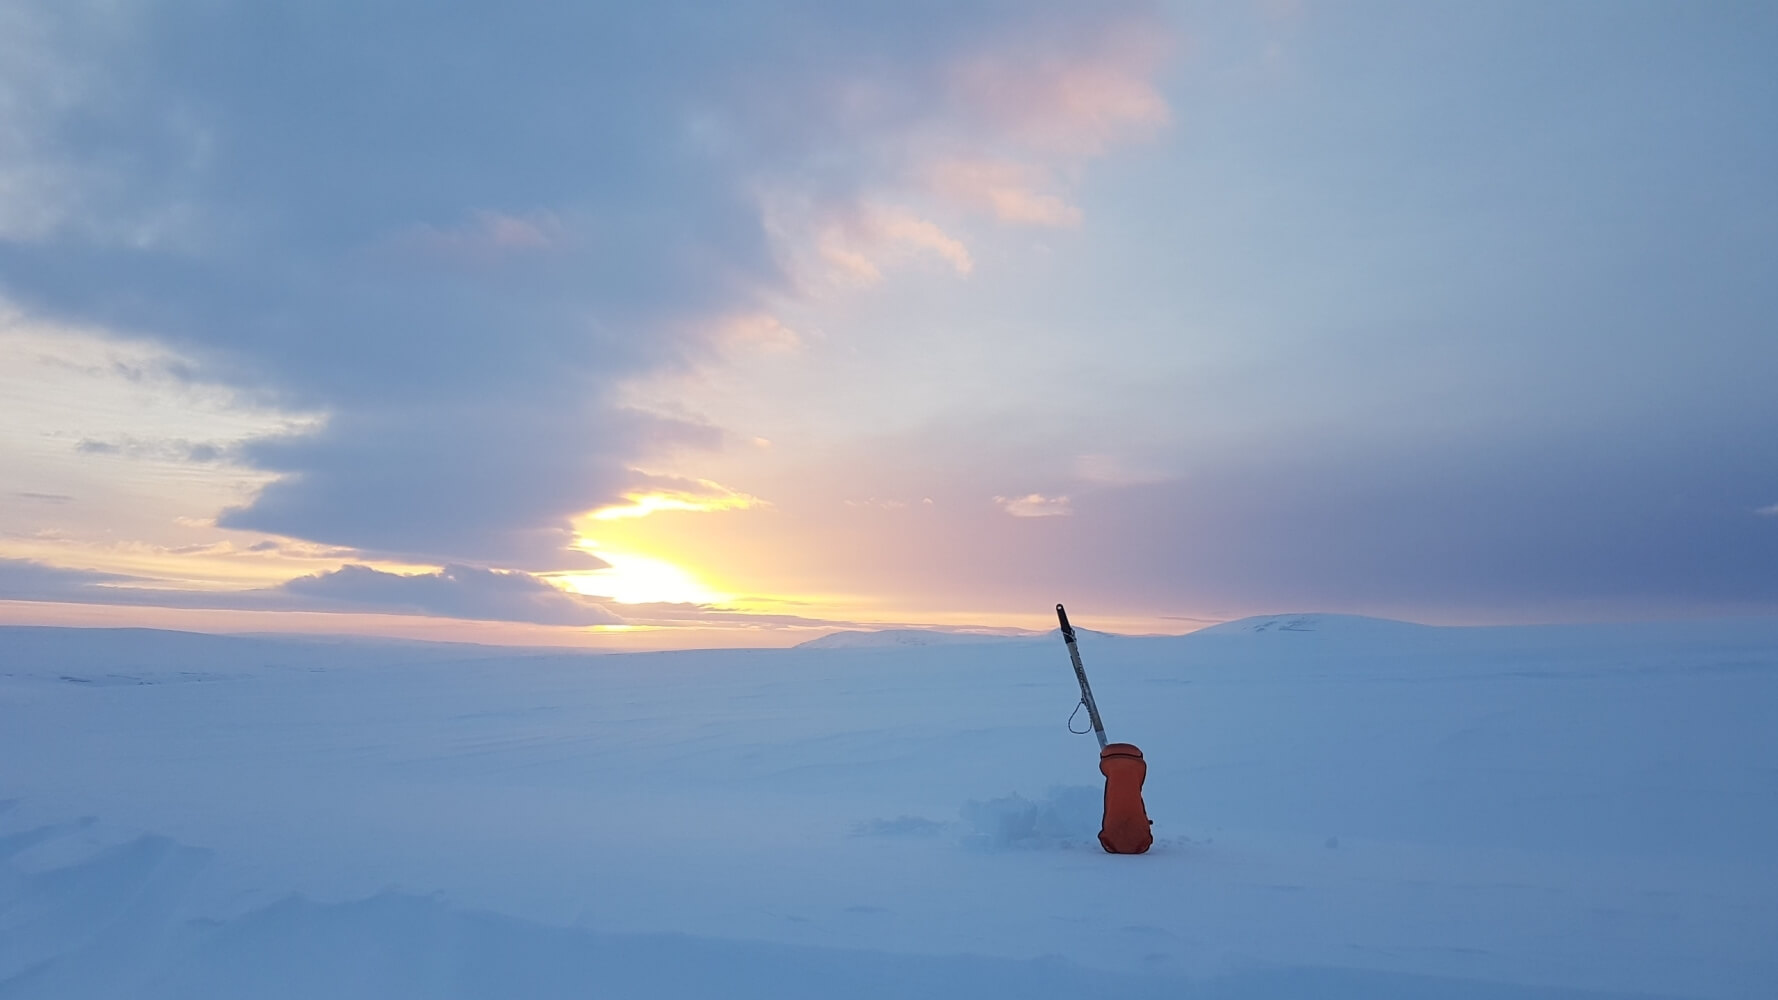 Розробники Frostpunk 2 відправили експедицію до найхолодніших земель Норвегії